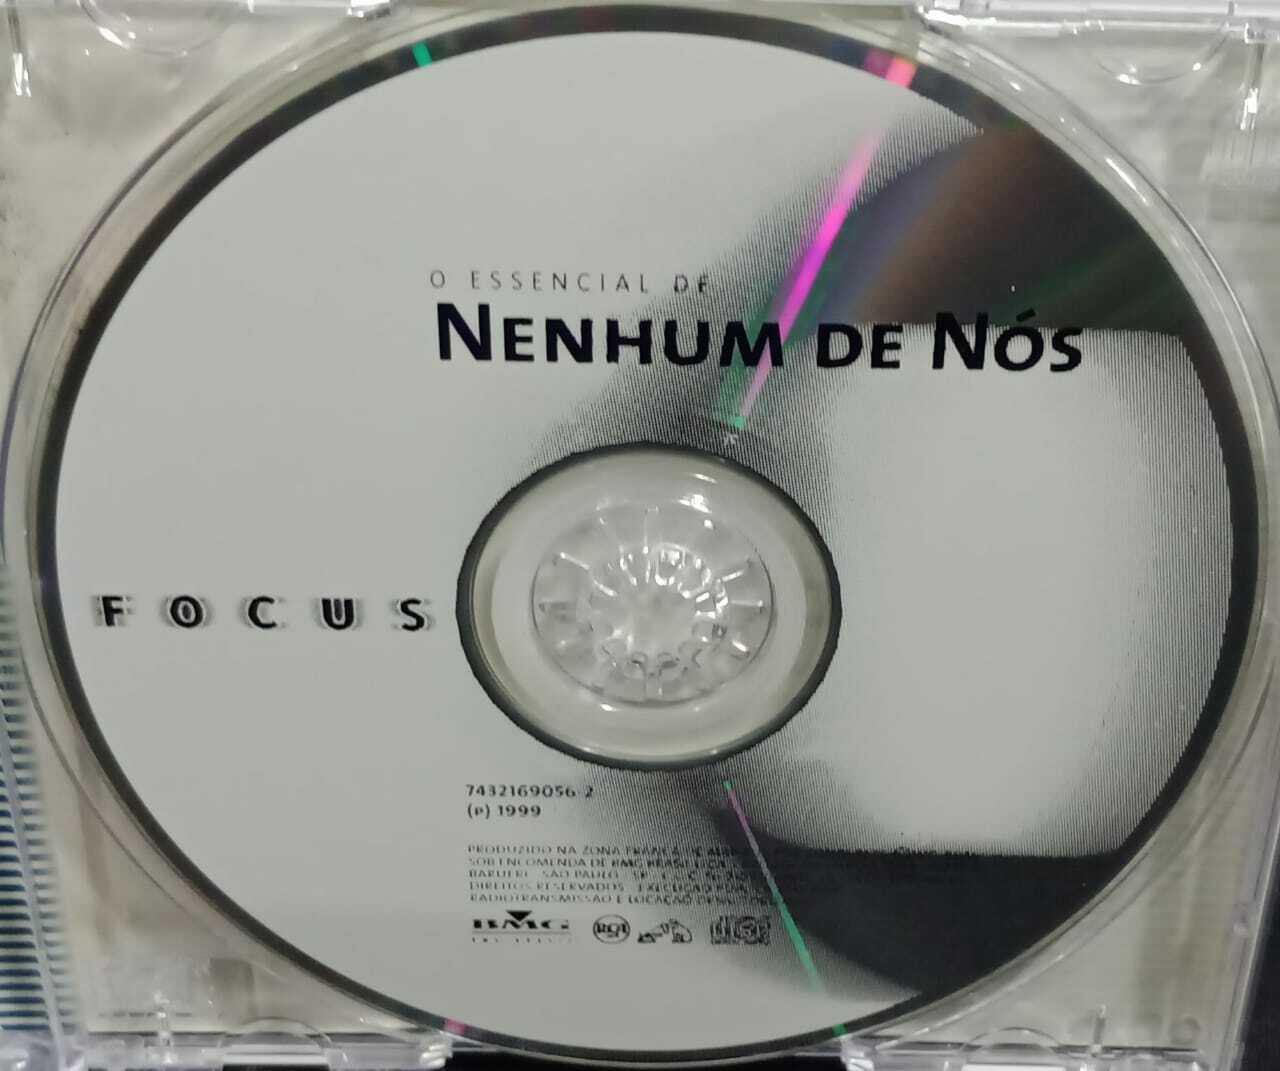 CD - Nenhum De Nós - Focus - O Essencial De